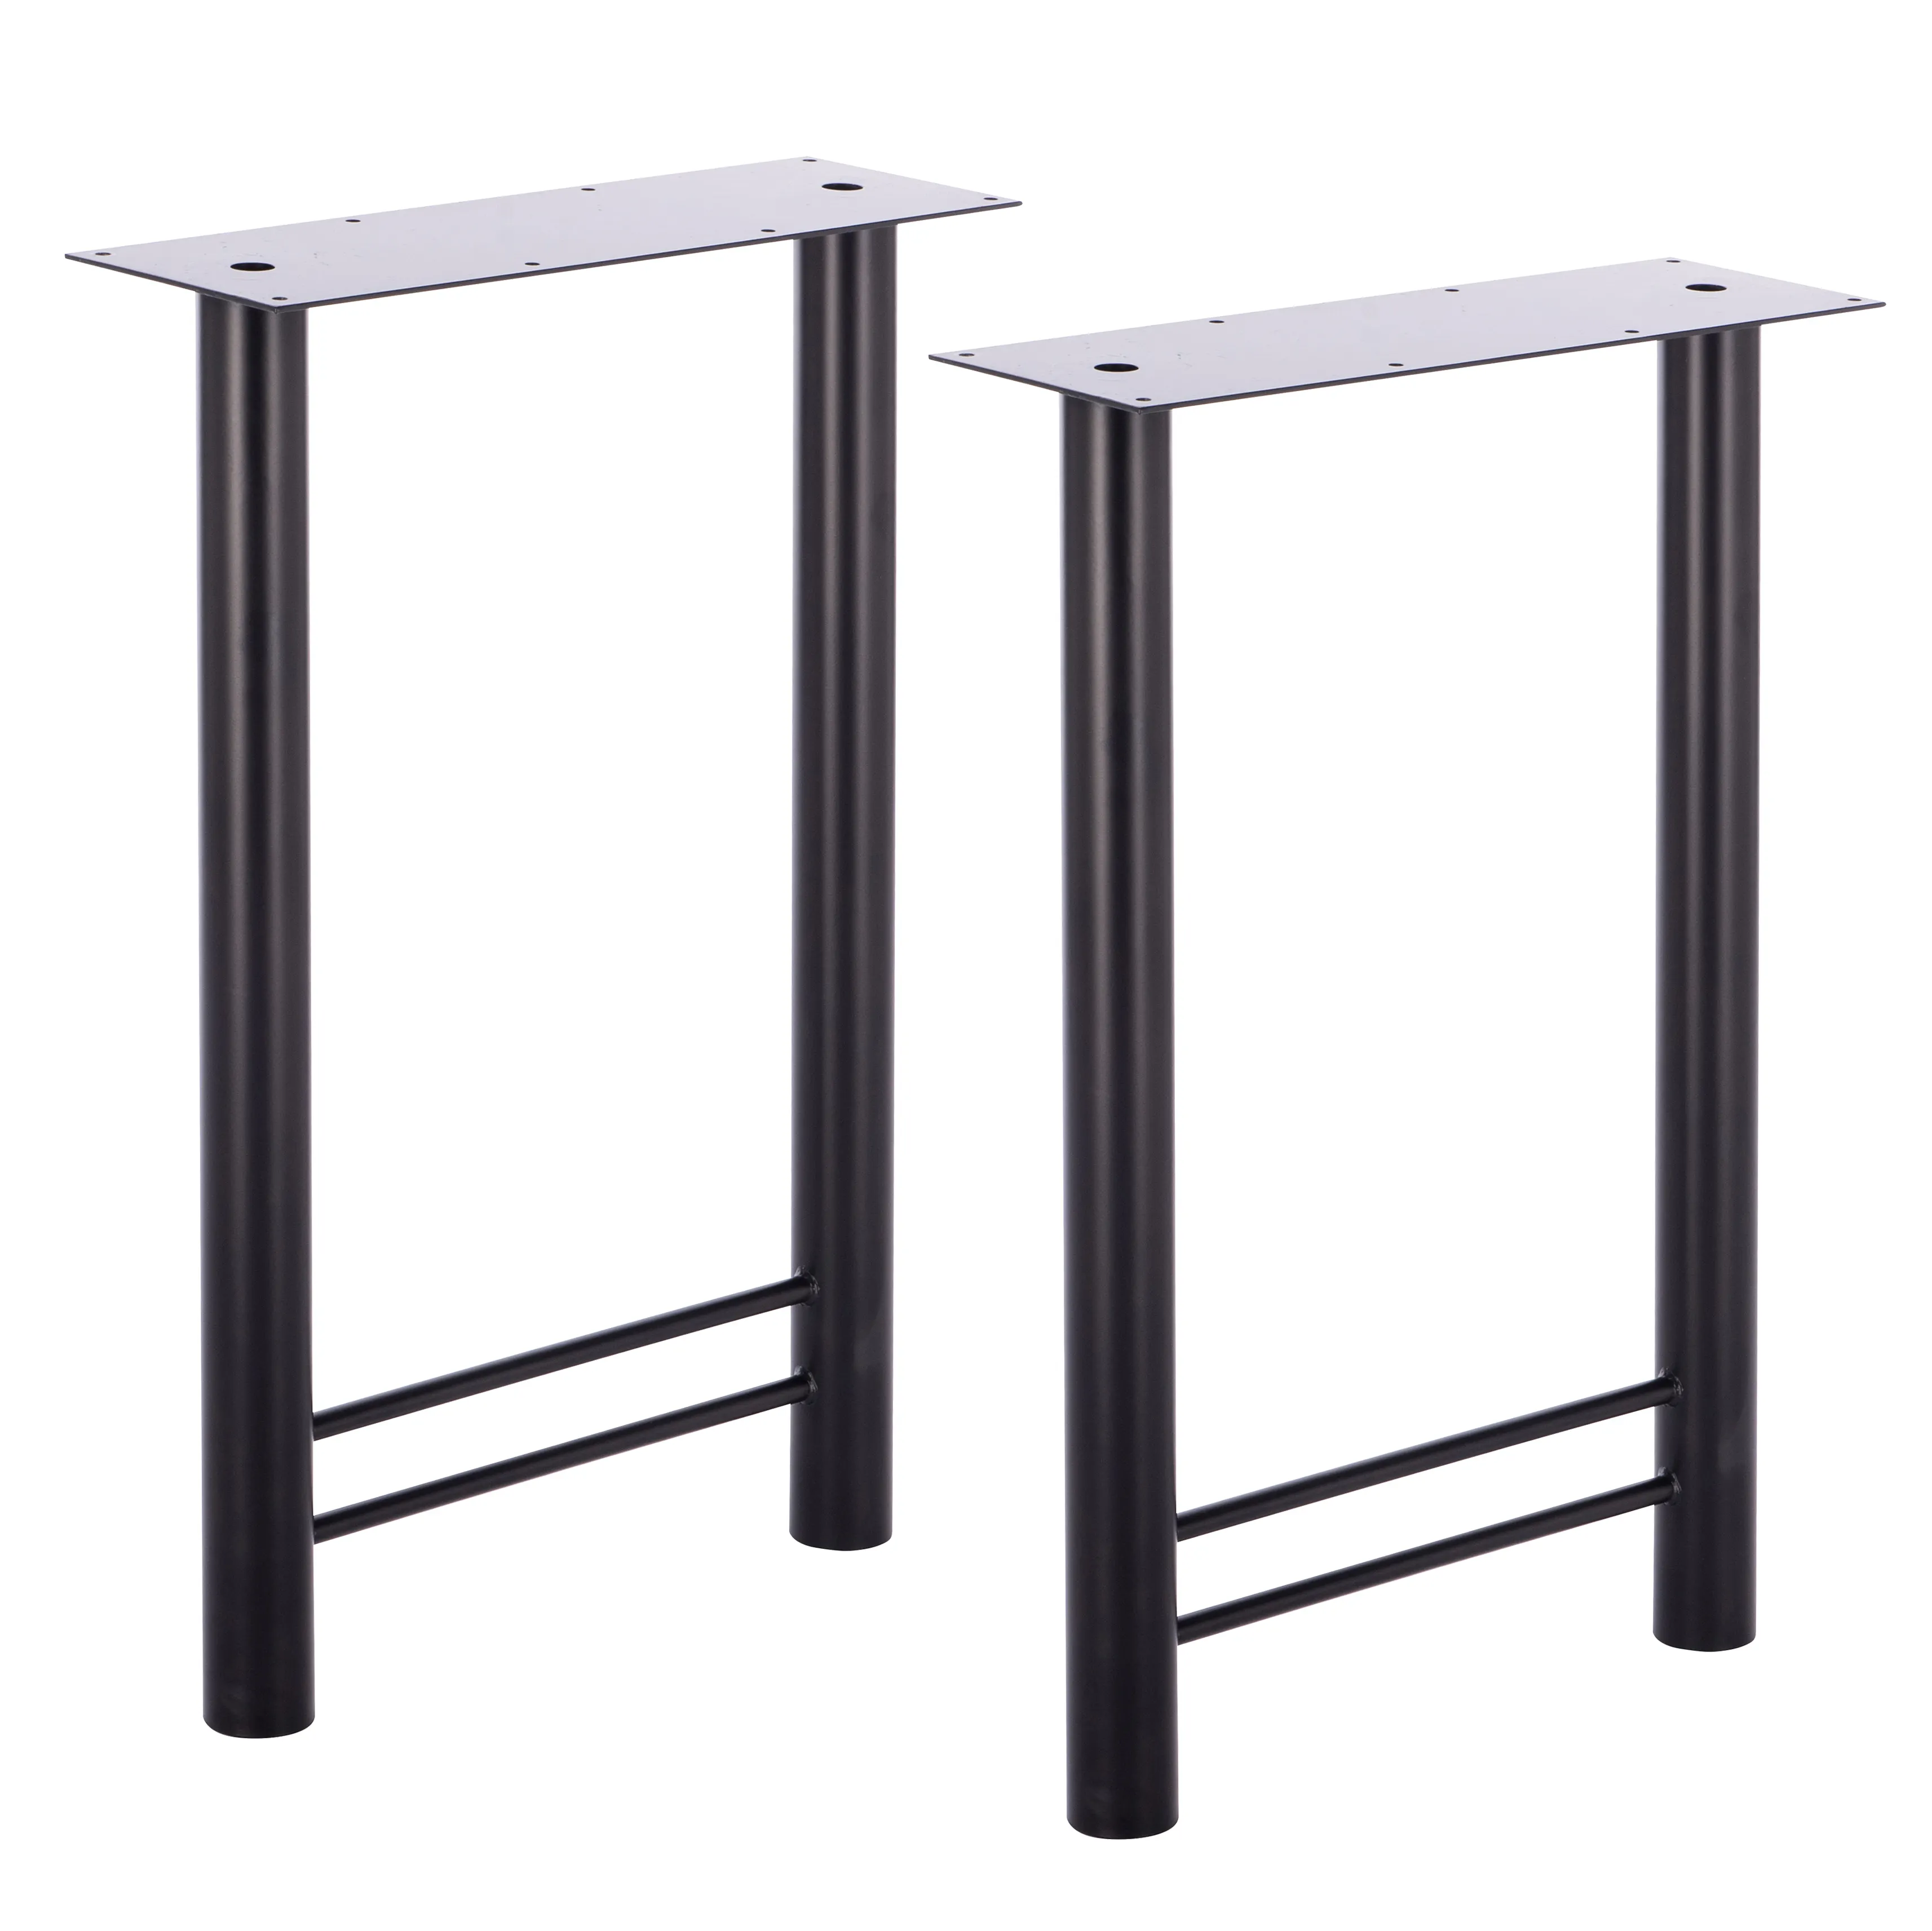 Хромированное основание для обеденного стола, мебельная фурнитура, основание для стола в форме буквы H, основание для офисного стола G800269, старинная чугунная черная ножка для мебели